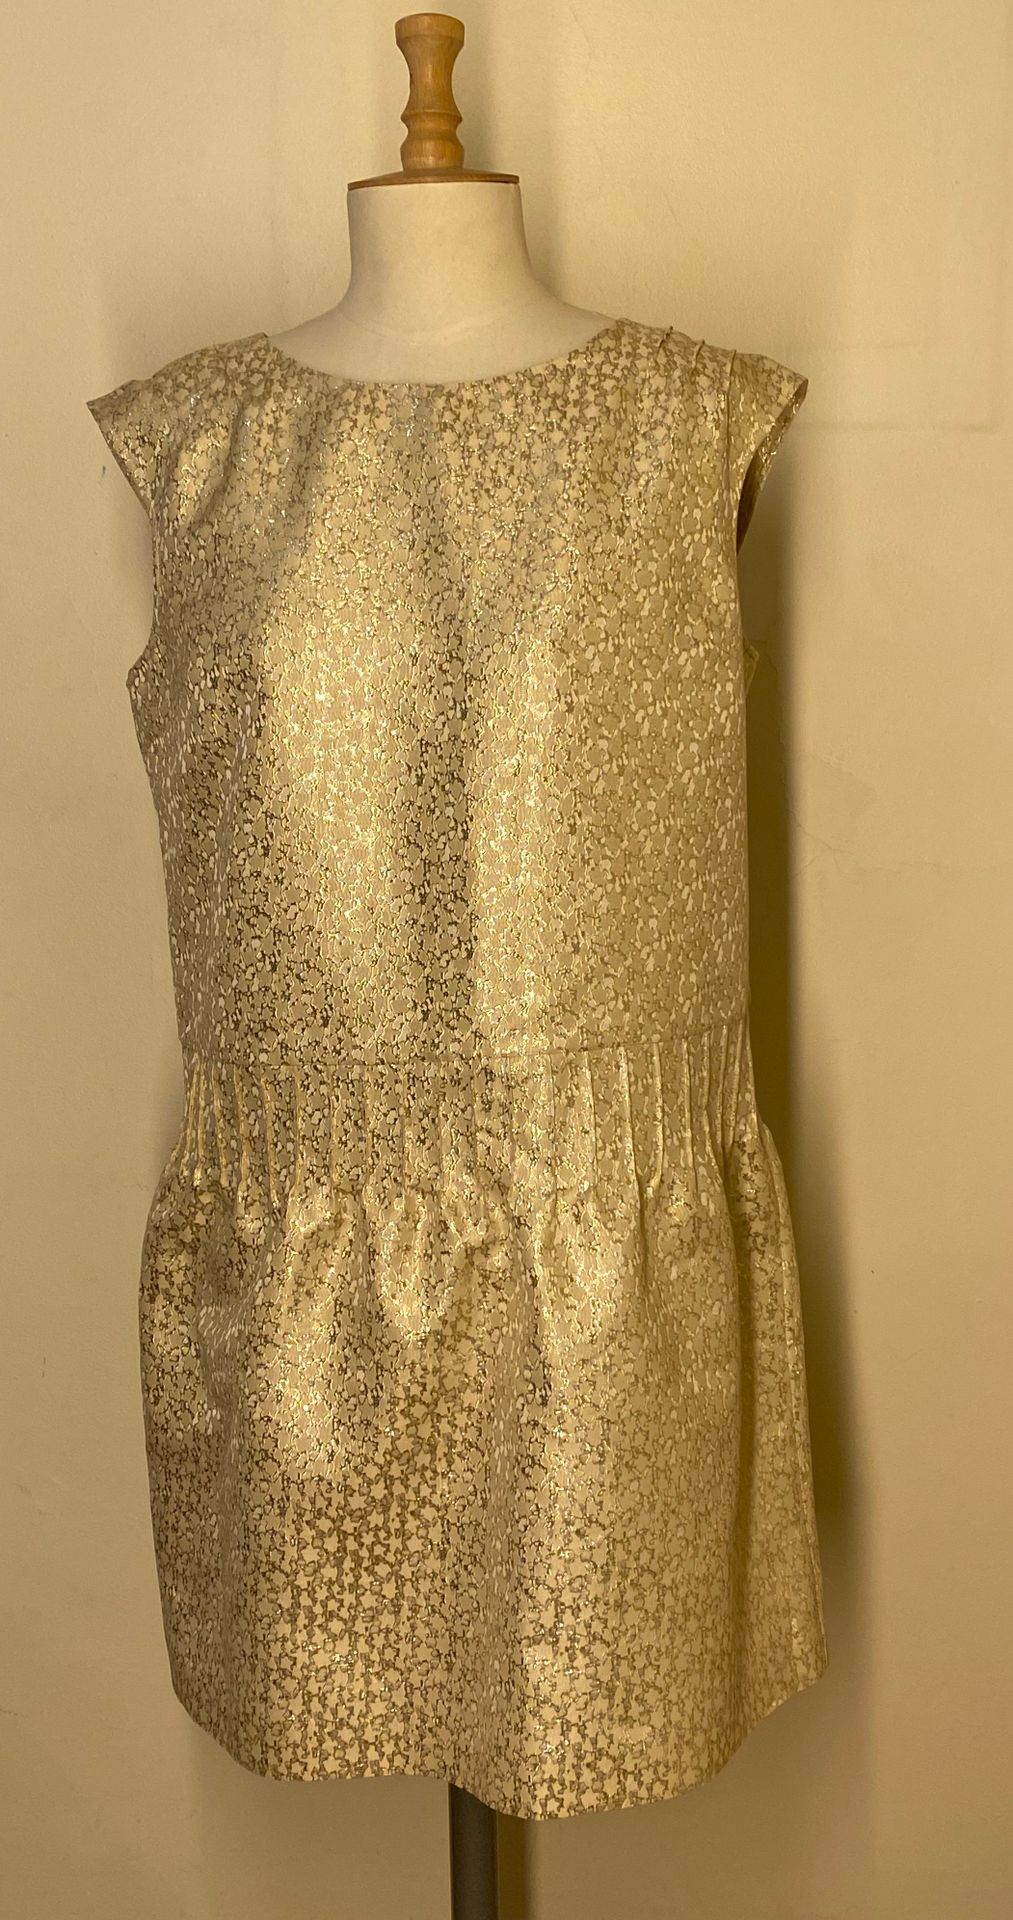 Null A.P.C rue Madame Paris

Robe en tissus à décor doré. Taille L

(Bon état)

&hellip;